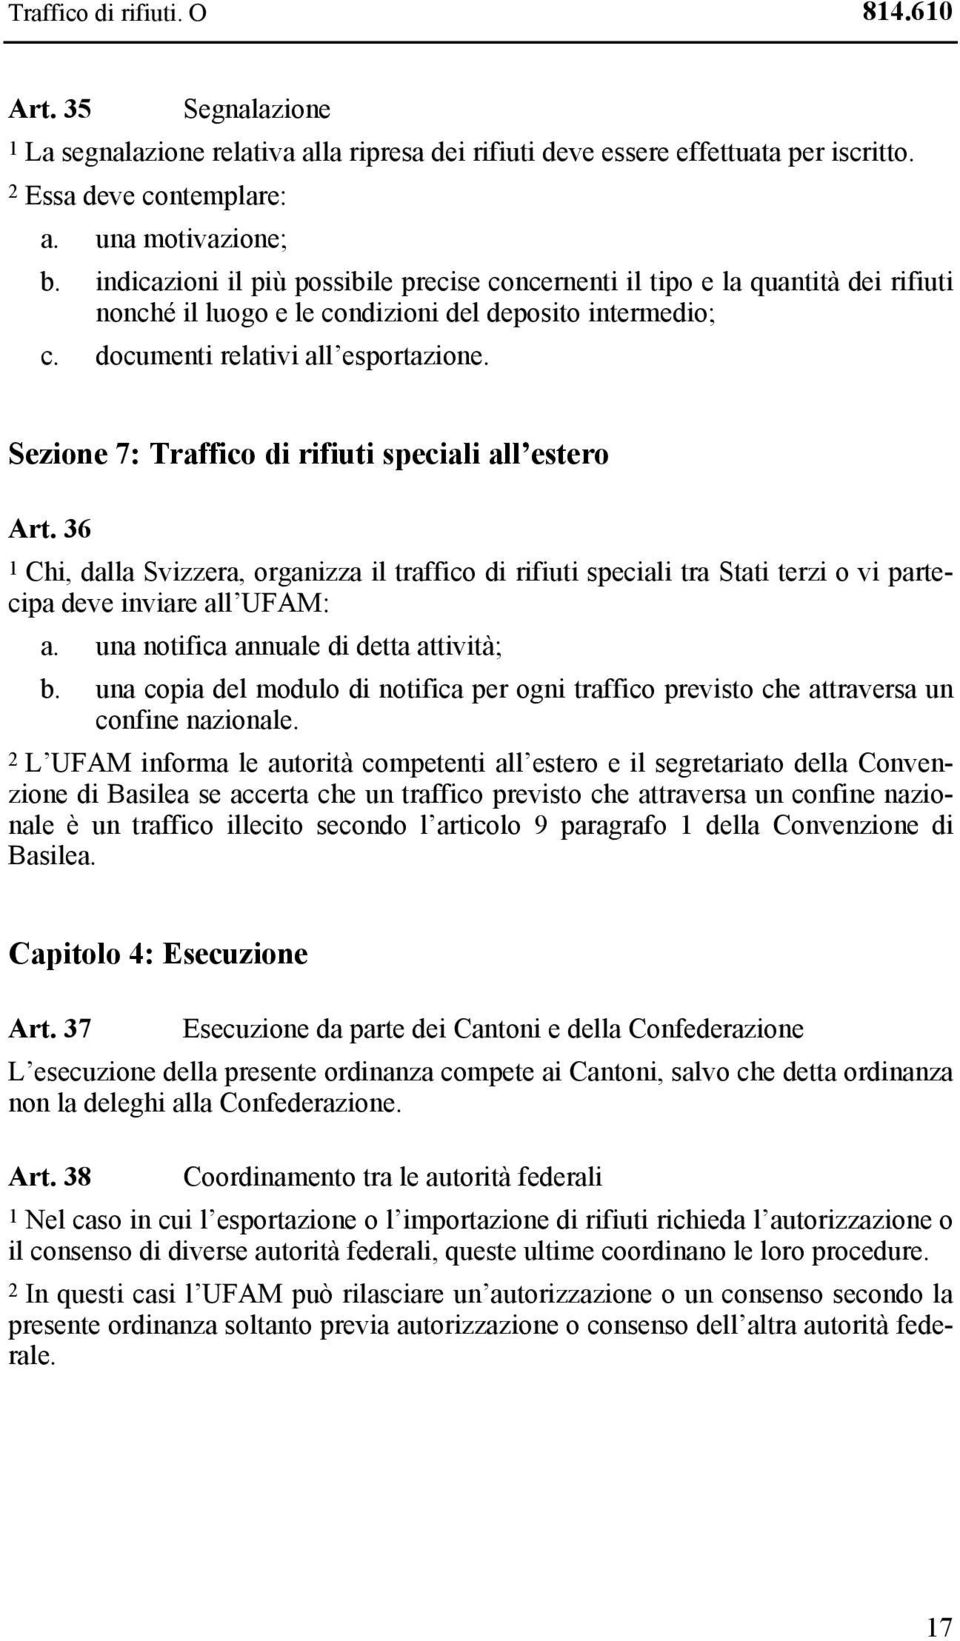 Sezione 7: Traffico di rifiuti speciali all estero Art. 36 1 Chi, dalla Svizzera, organizza il traffico di rifiuti speciali tra Stati terzi o vi partecipa deve inviare all UFAM: a.